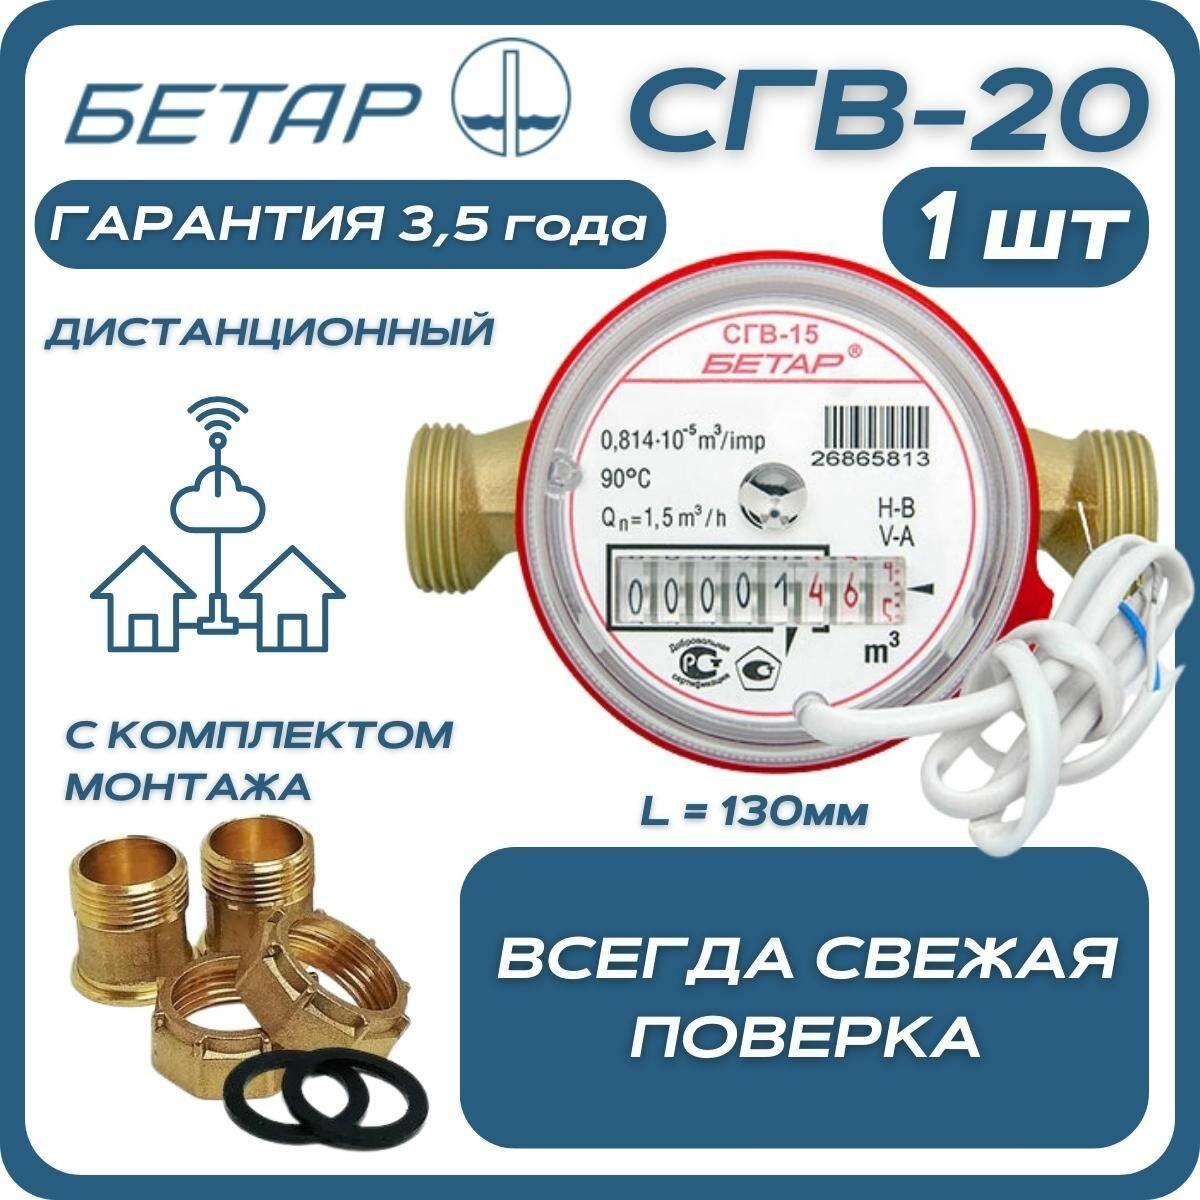 Счётчик воды бытовой Бетар СГВ 20 дистанционный с монтажным комплектом